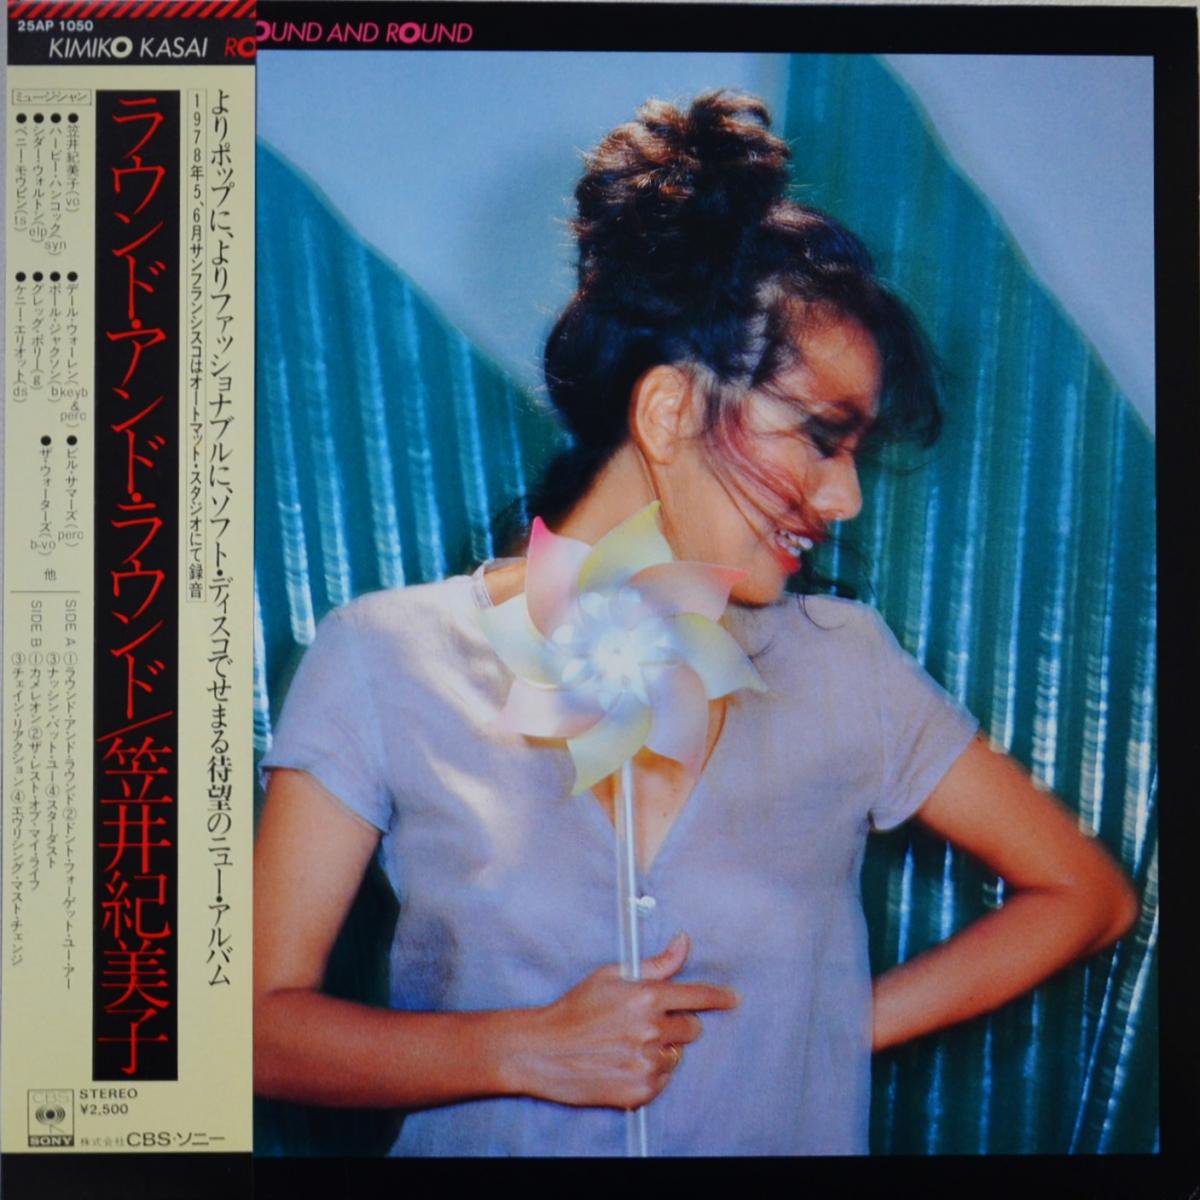 笠井紀美子 - ラウンド・アンド・ラウンド LP 原盤 Mint 帯付き